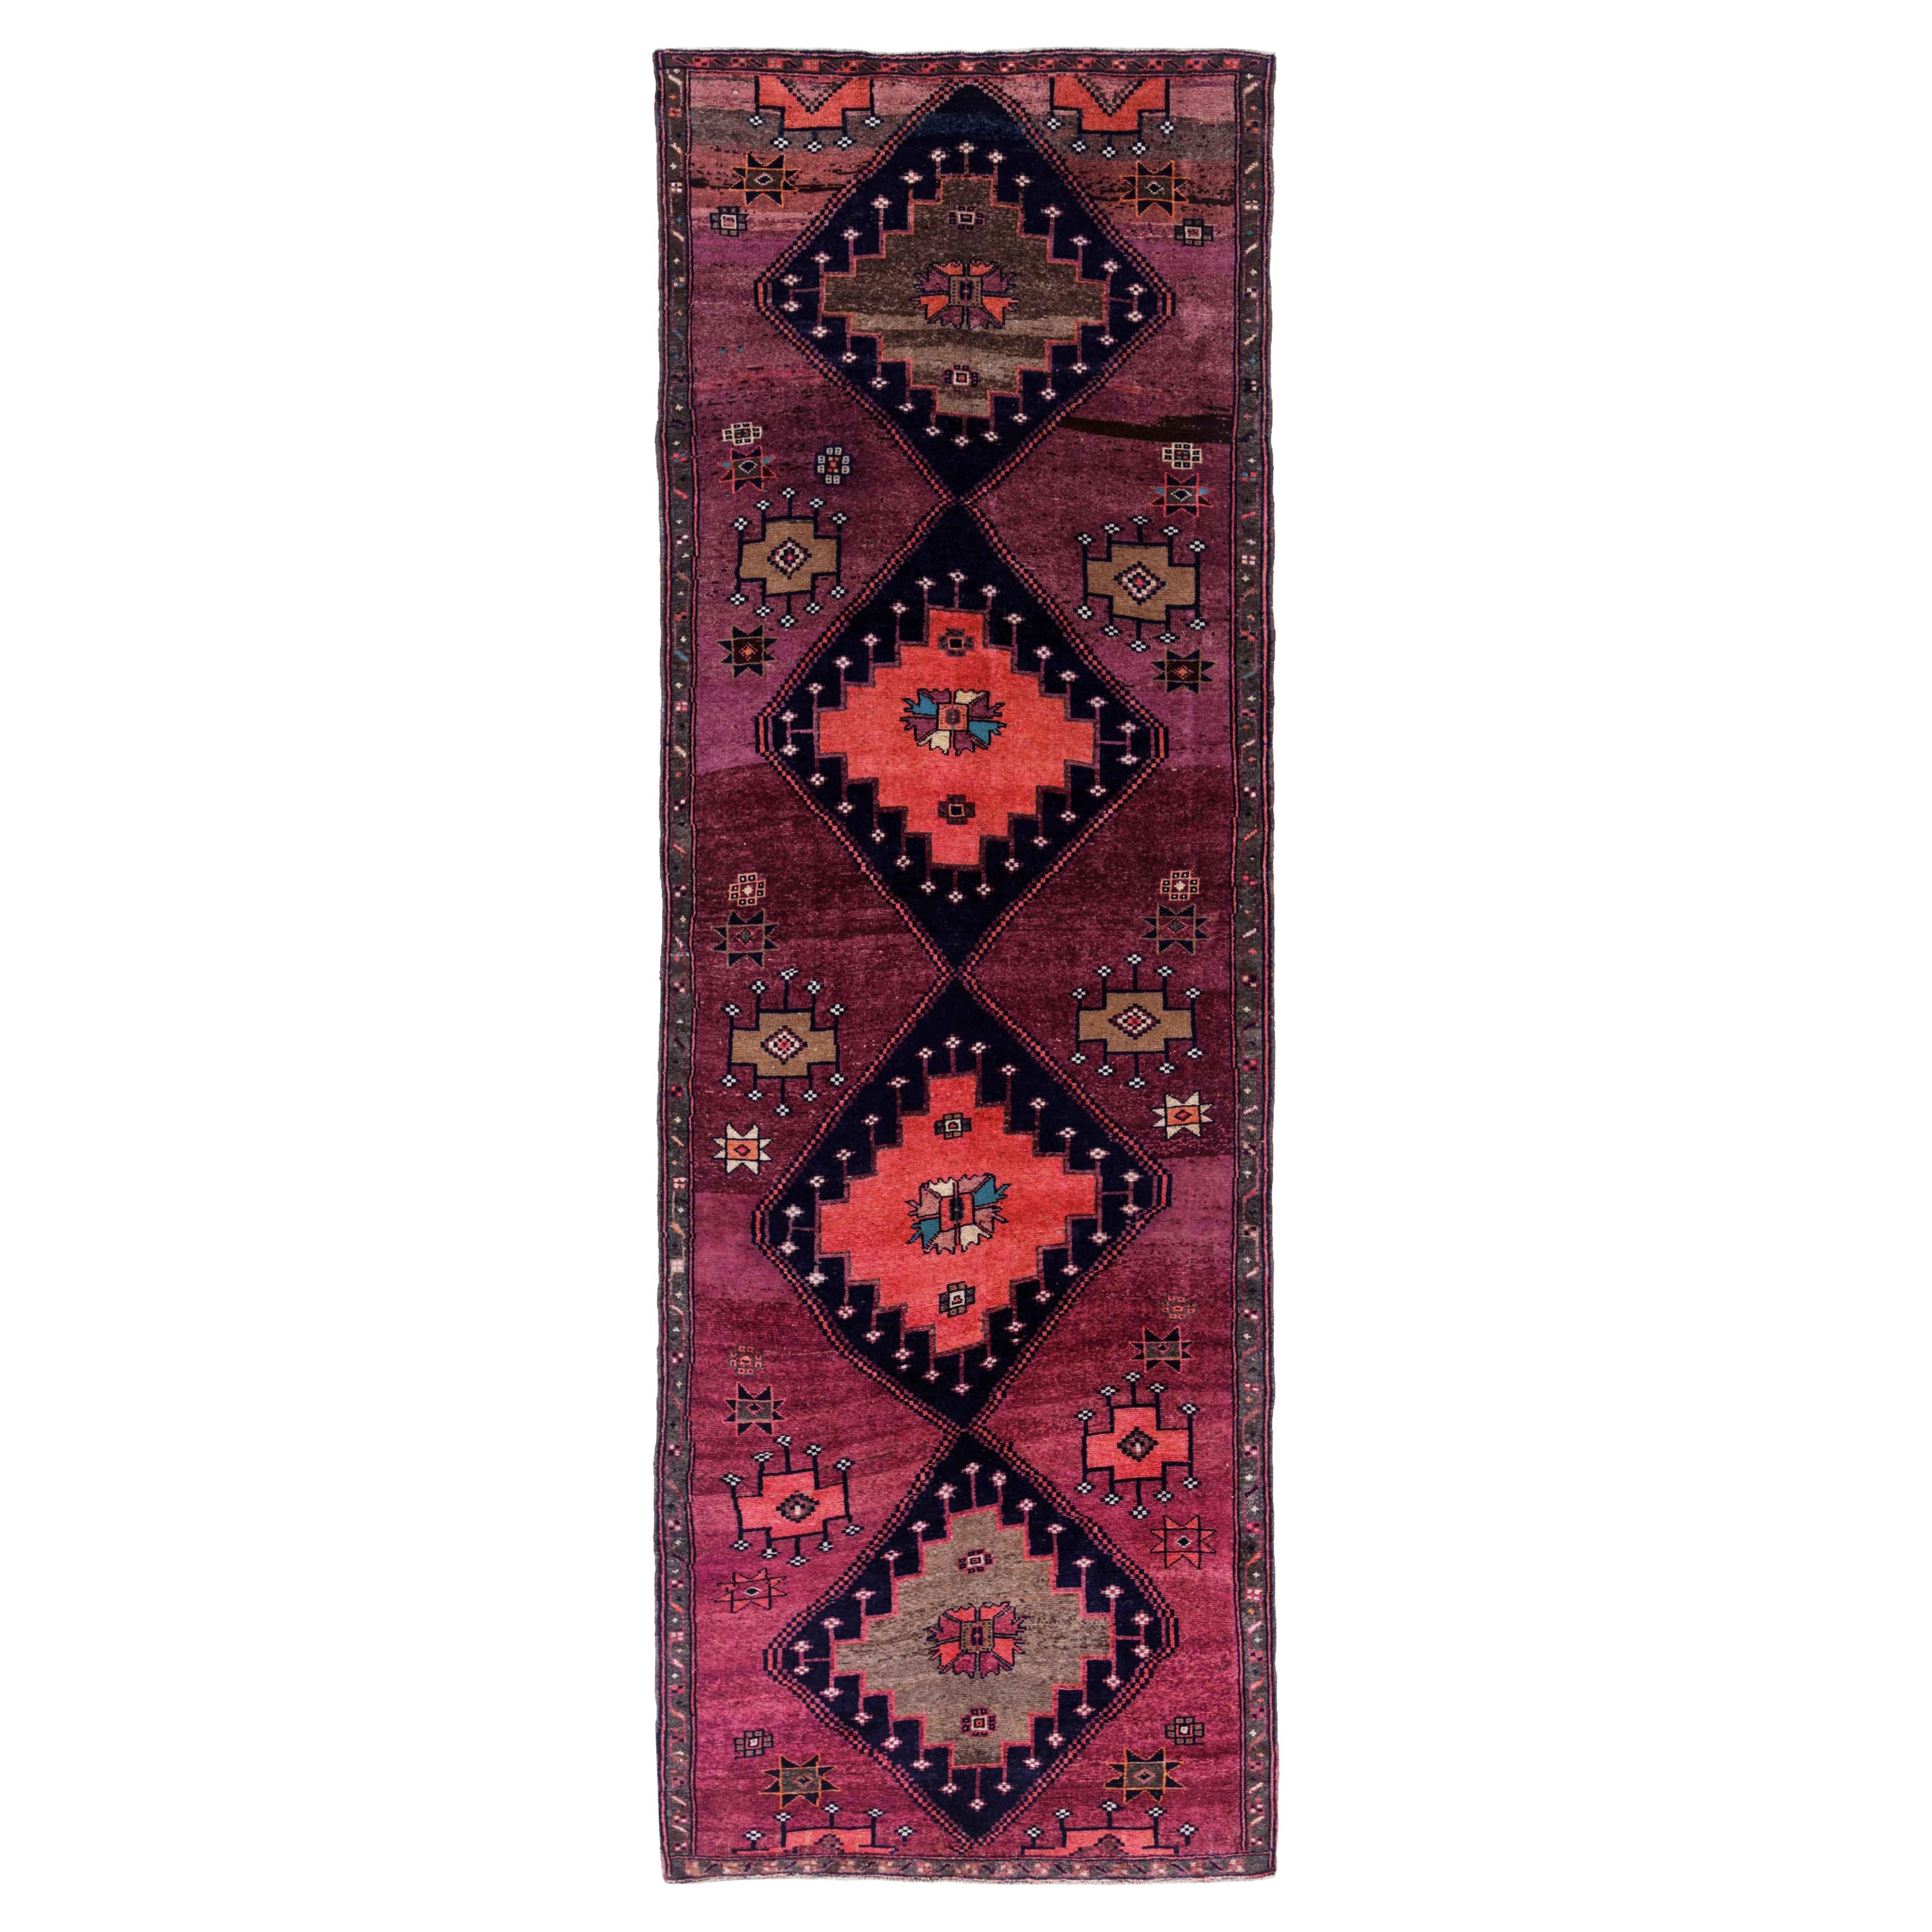 Antique Persian Area Rug Azerbaijan Design